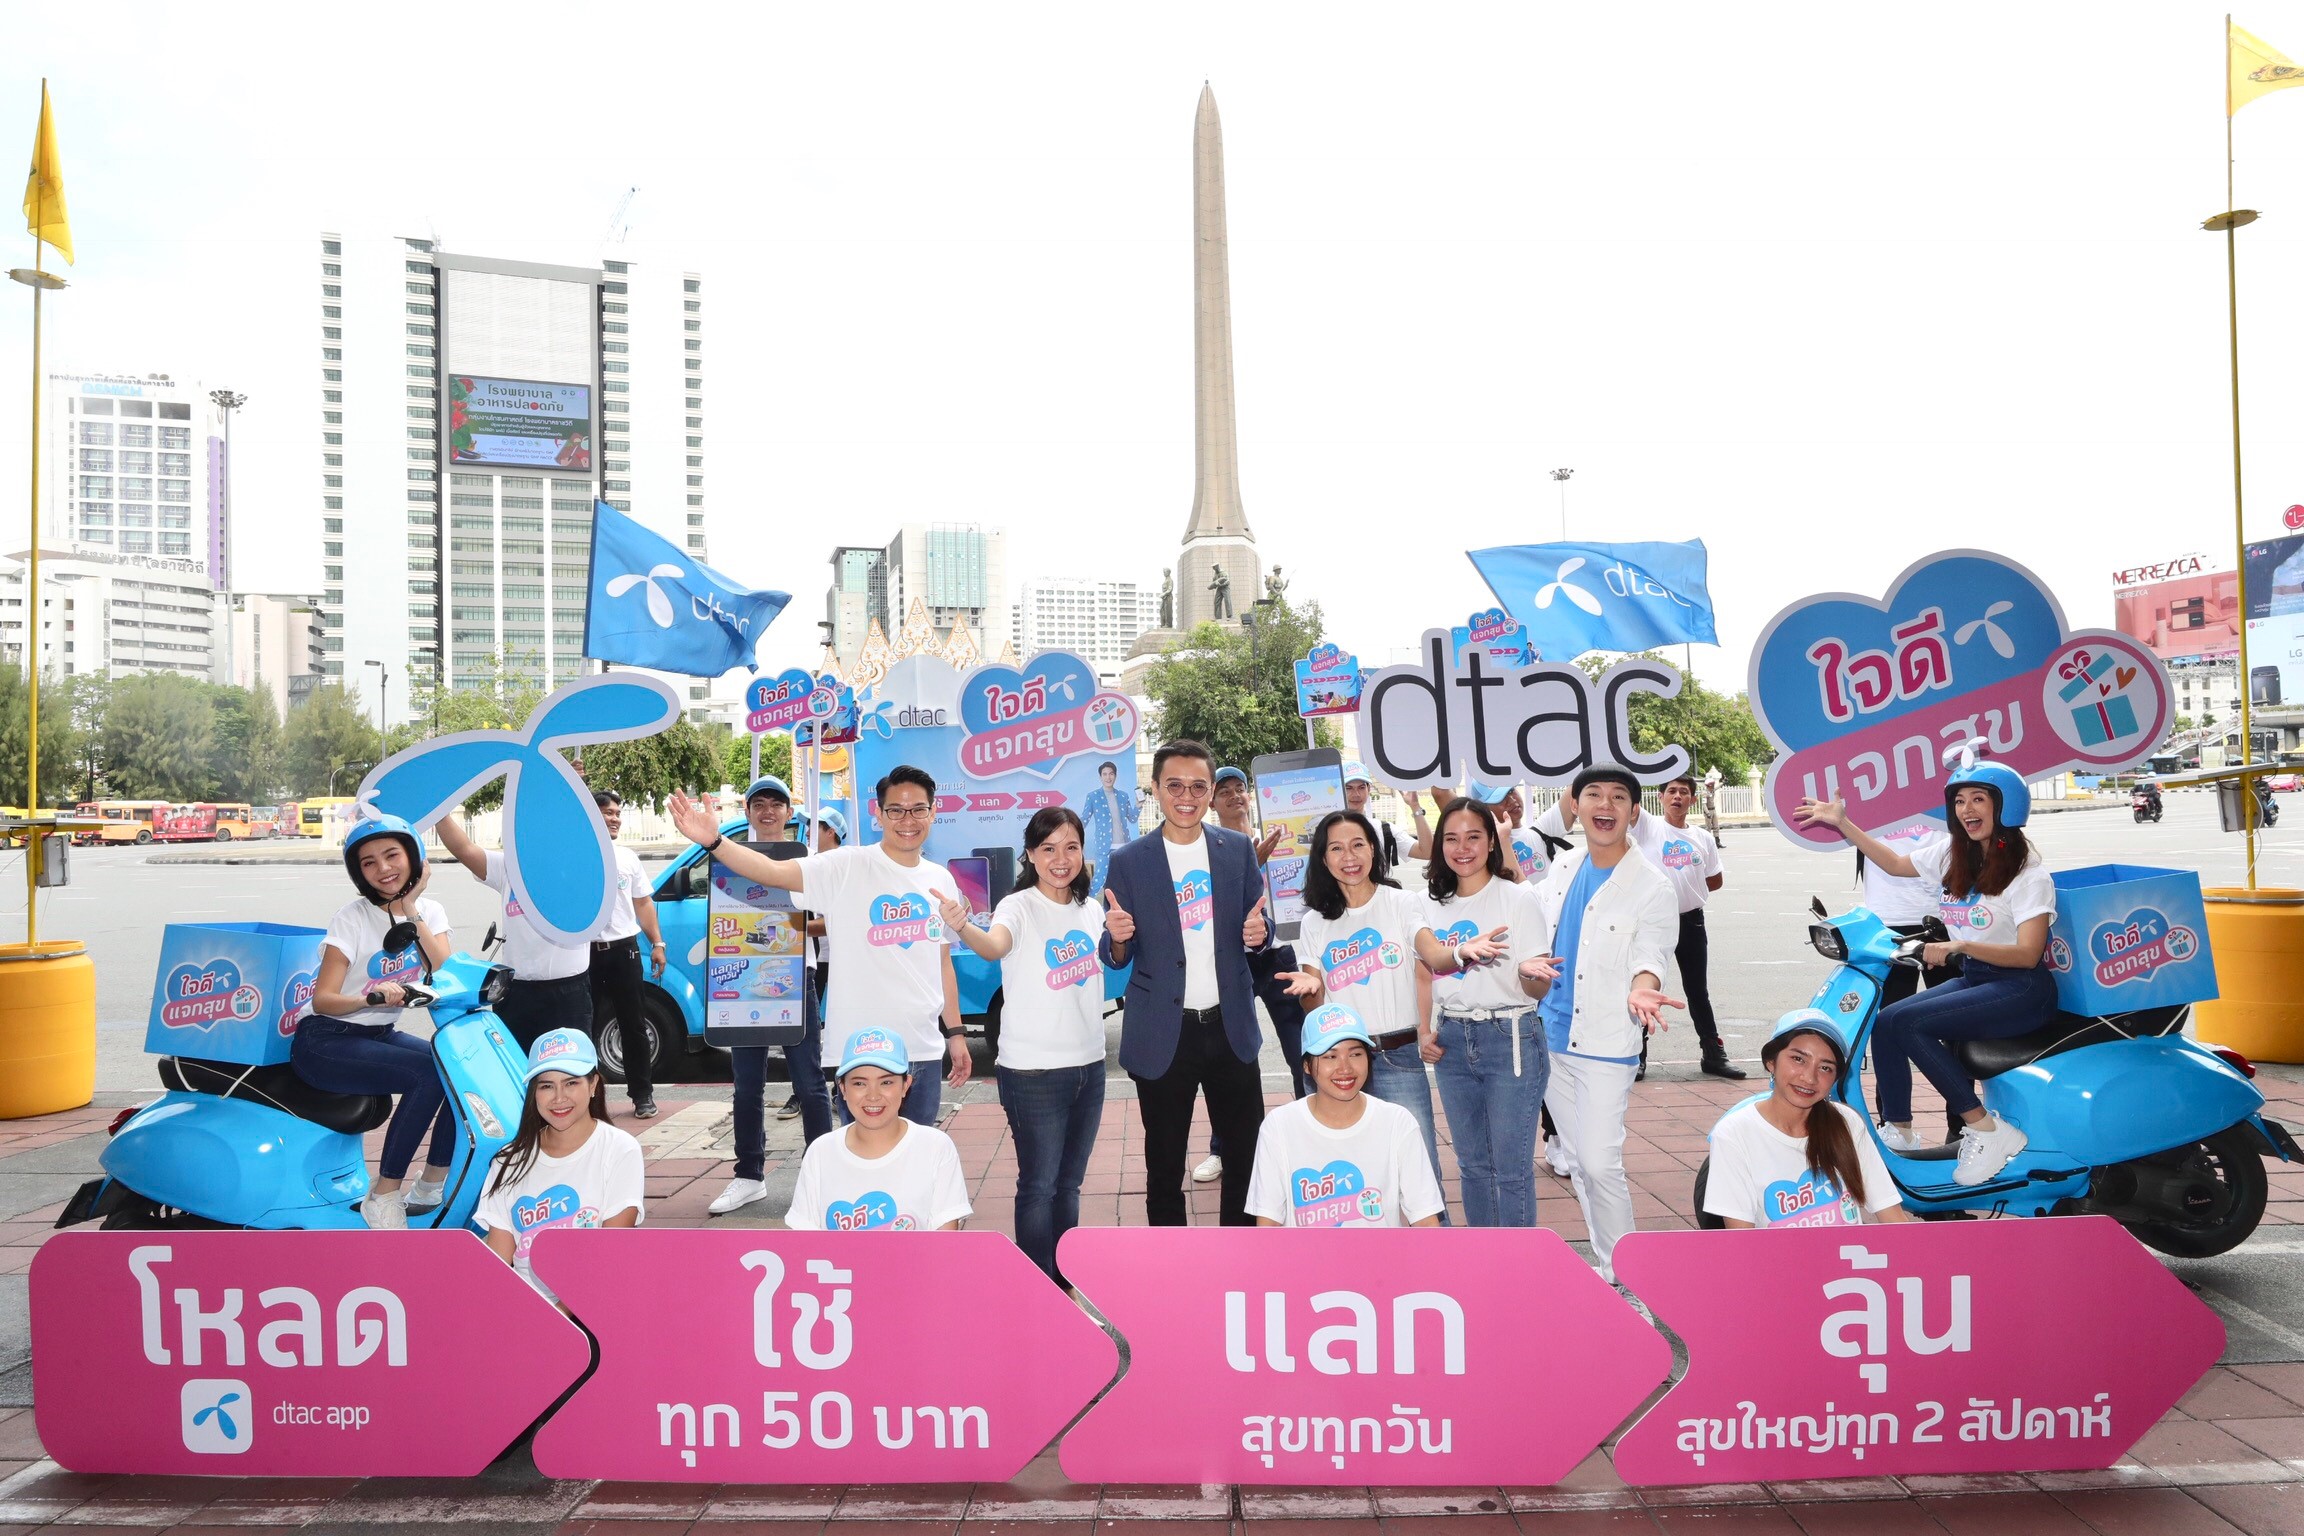 สร้างจุดเปลี่ยน! ดีแทคเปิดตัว ‘ใจดี แจกสุข’ แคมเปญ CRM พรีเพดครั้งแรกในไทย คืนกำไรให้ลูกค้า